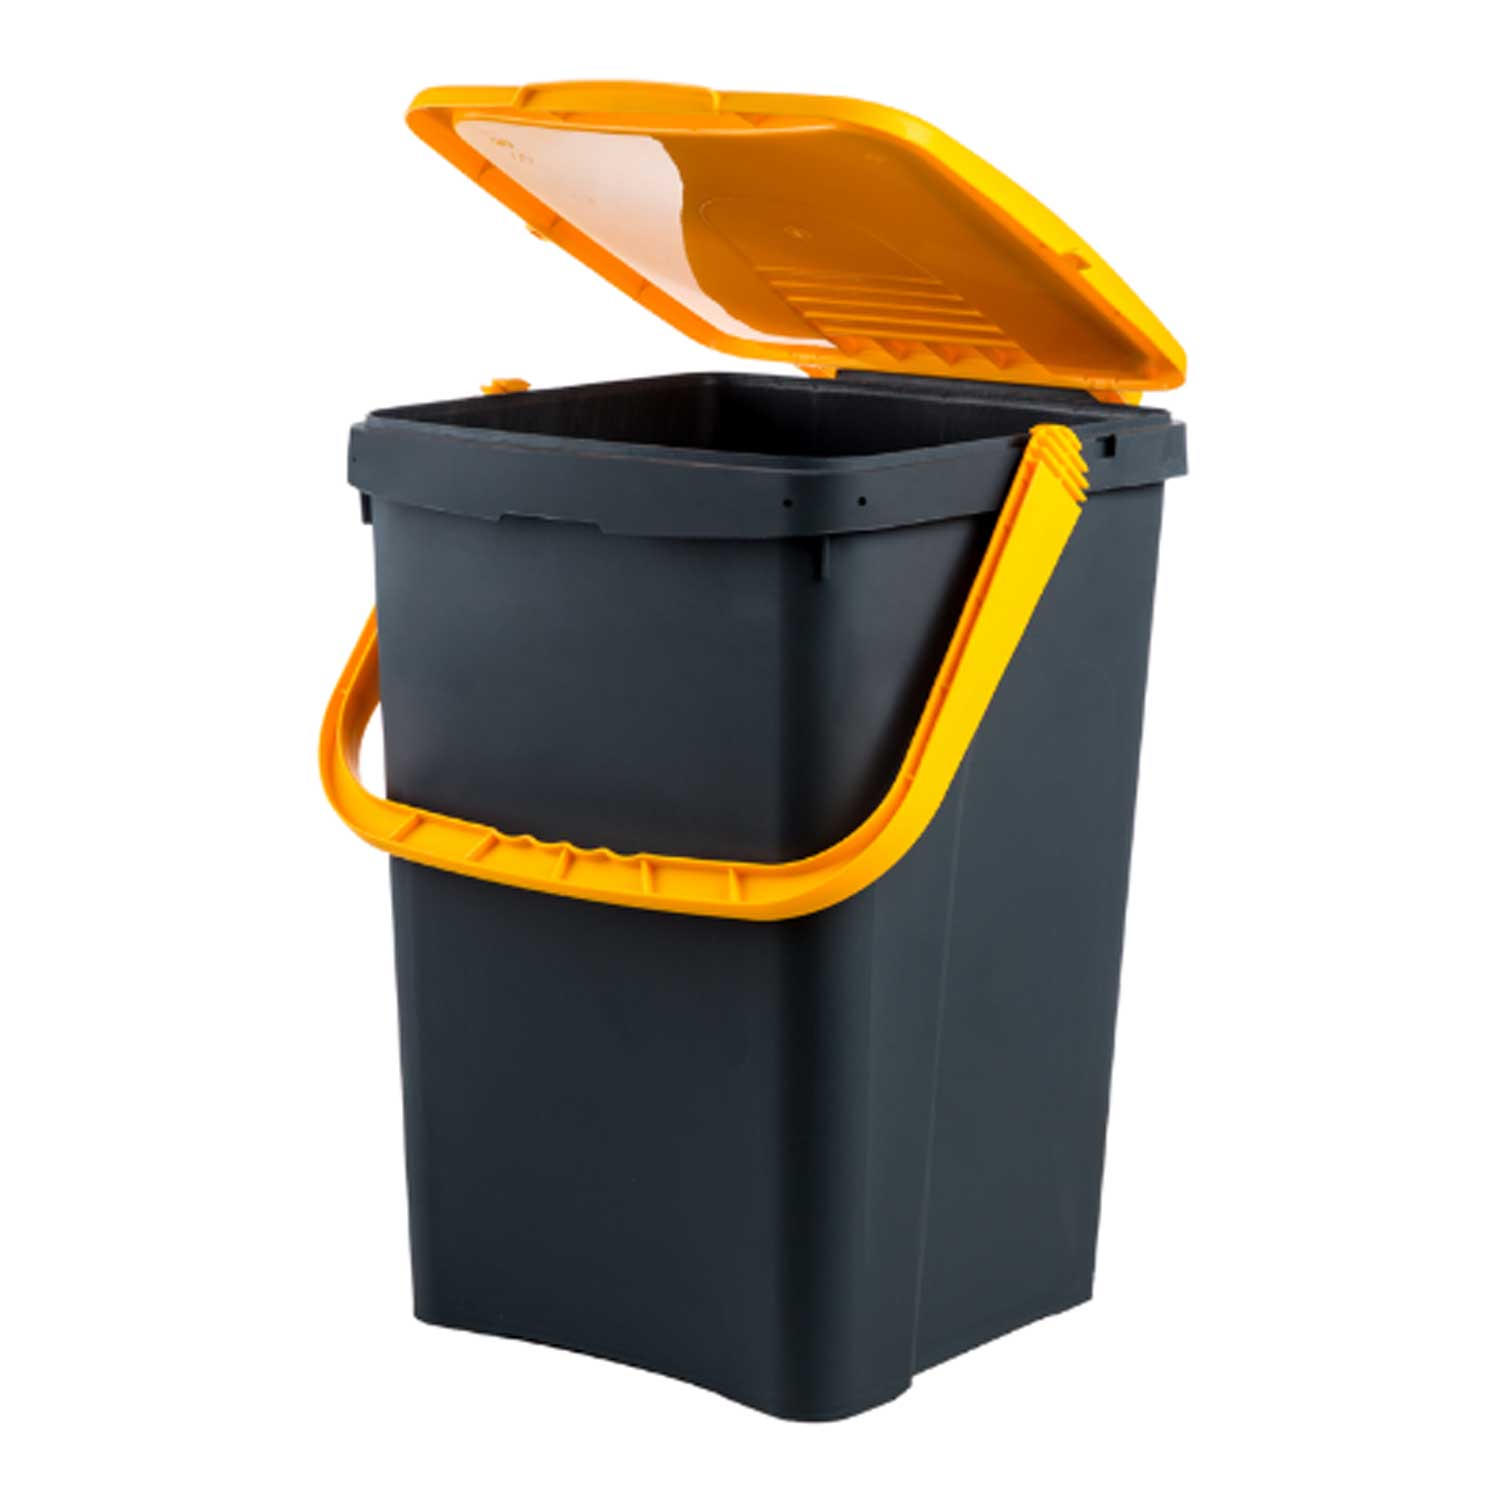 Ecoplast pattumiera per raccolta differenziata 50 lt, bidone spazzatura giallo